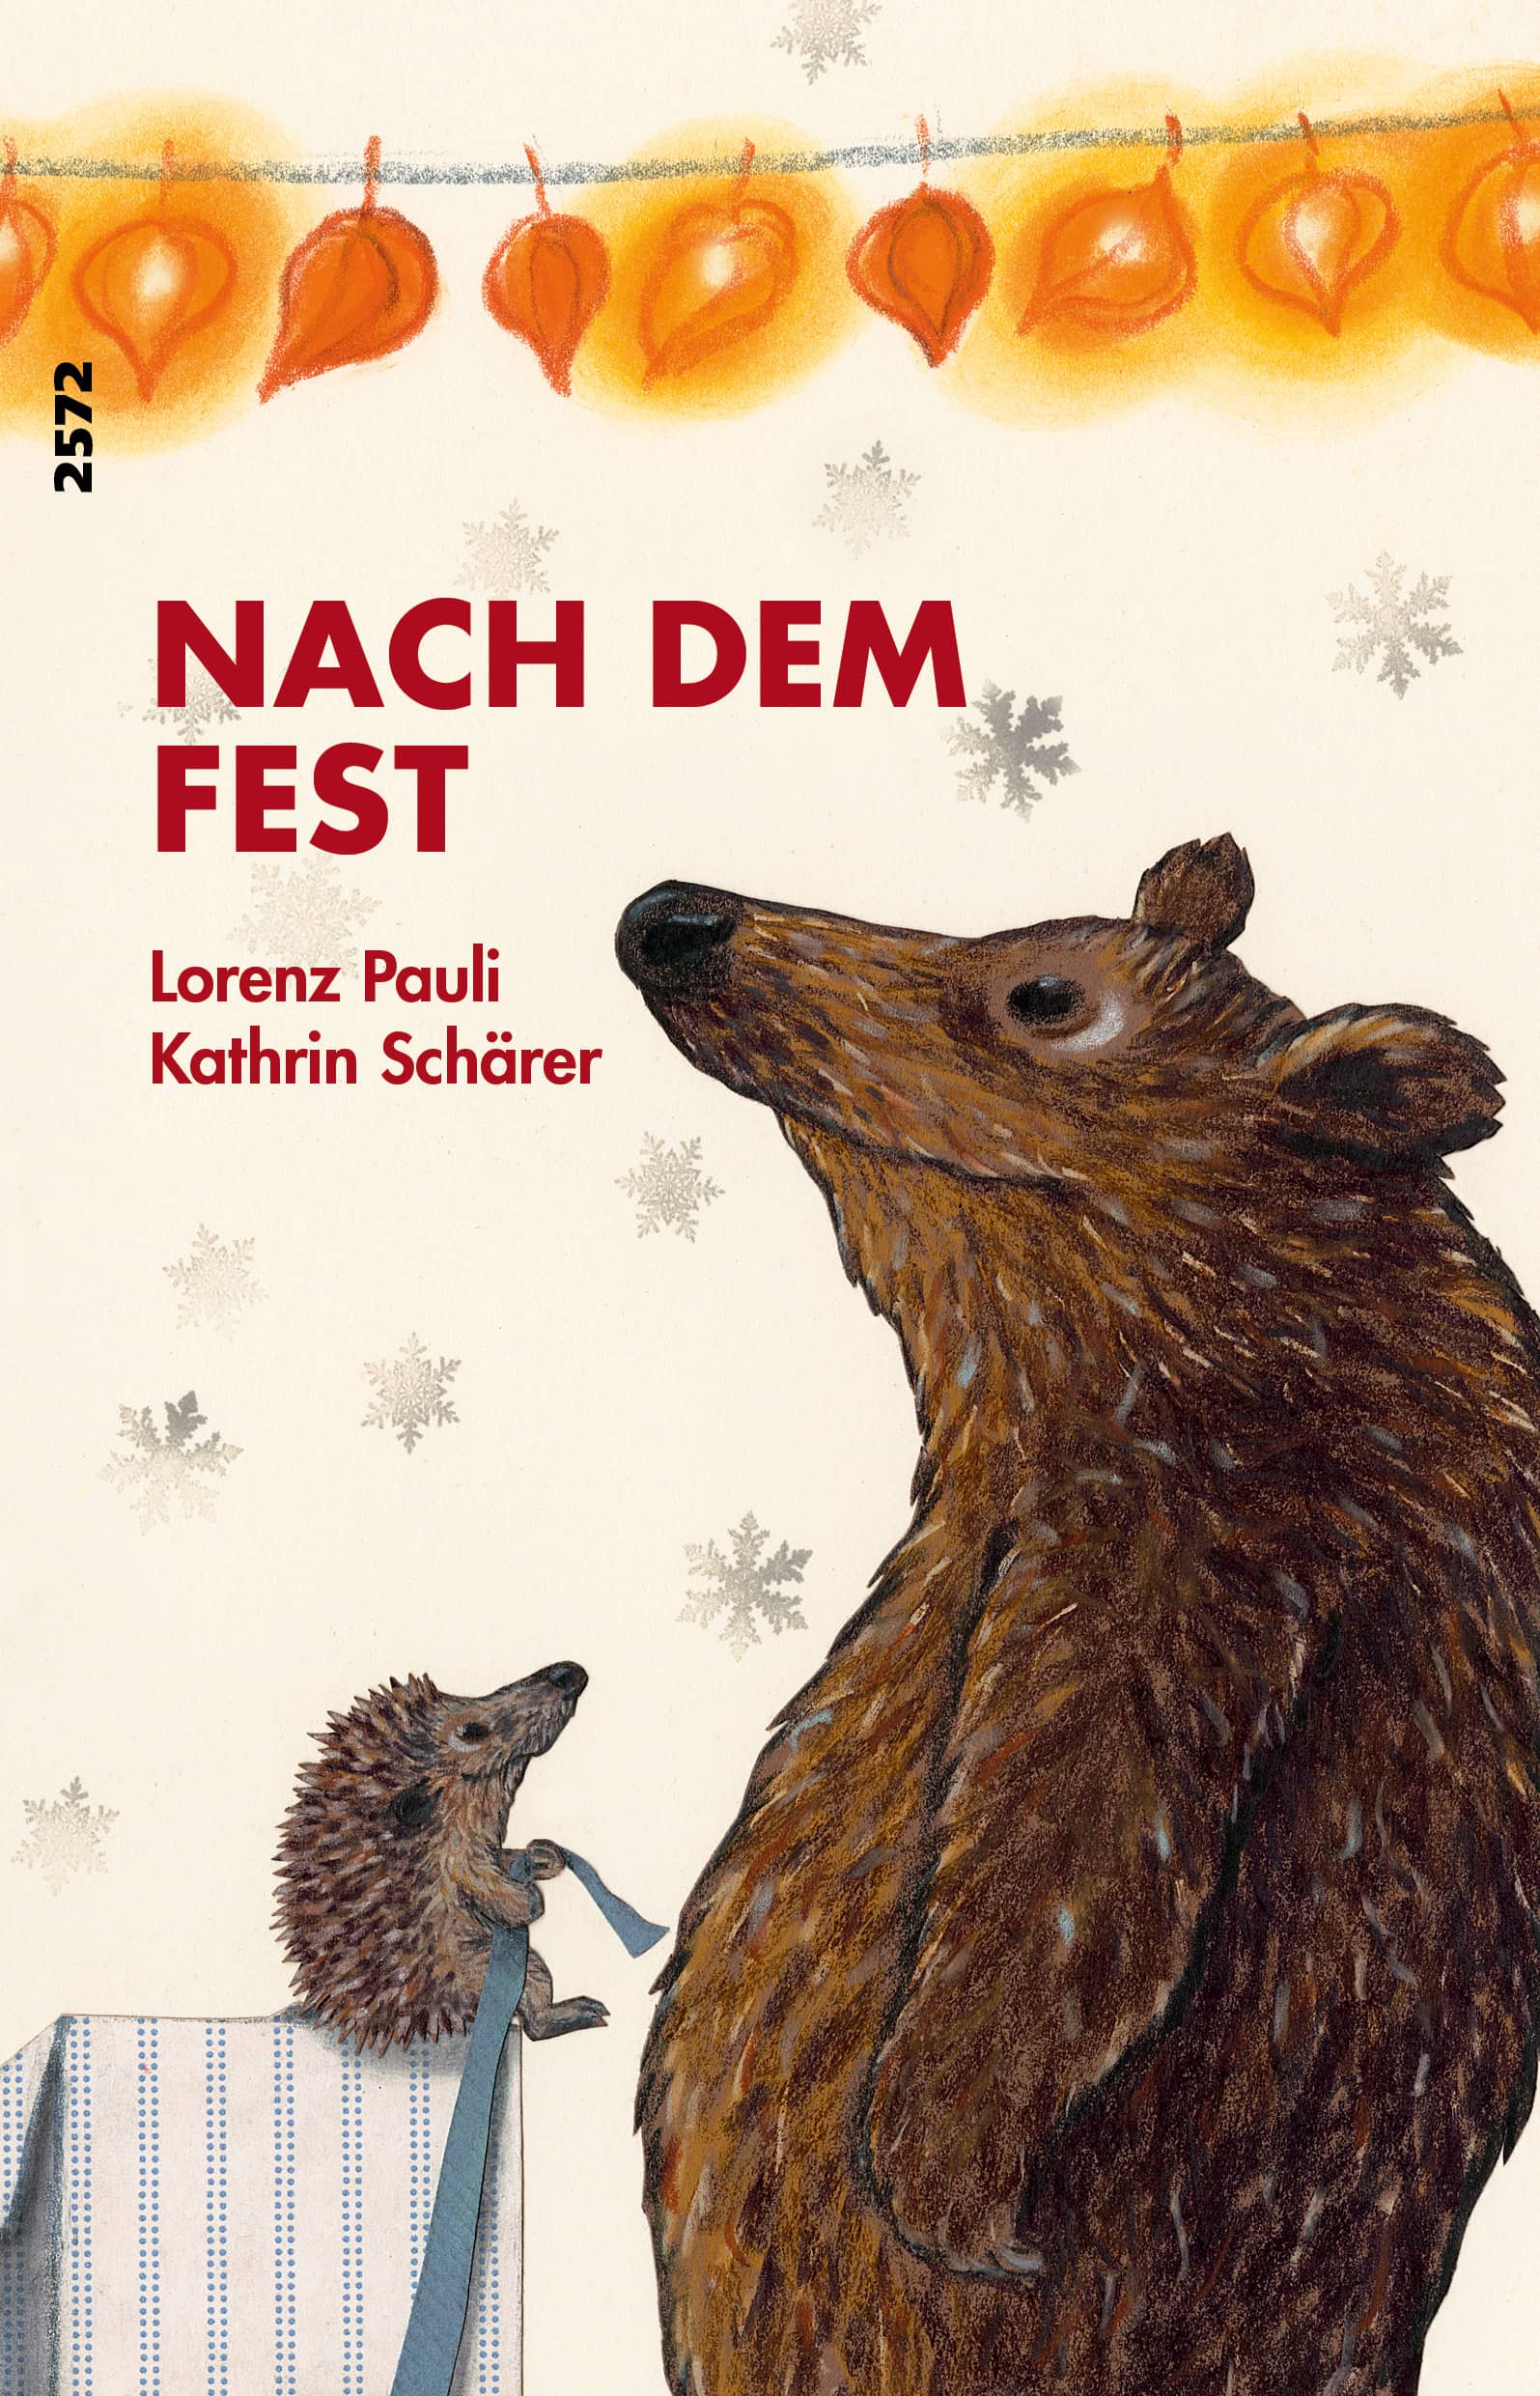 Nach dem Fest, ein Kinderbuch von Lorenz Pauli, Illustration von Kathrin Schaerer, SJW Verlag, Monate, Jahreszeiten